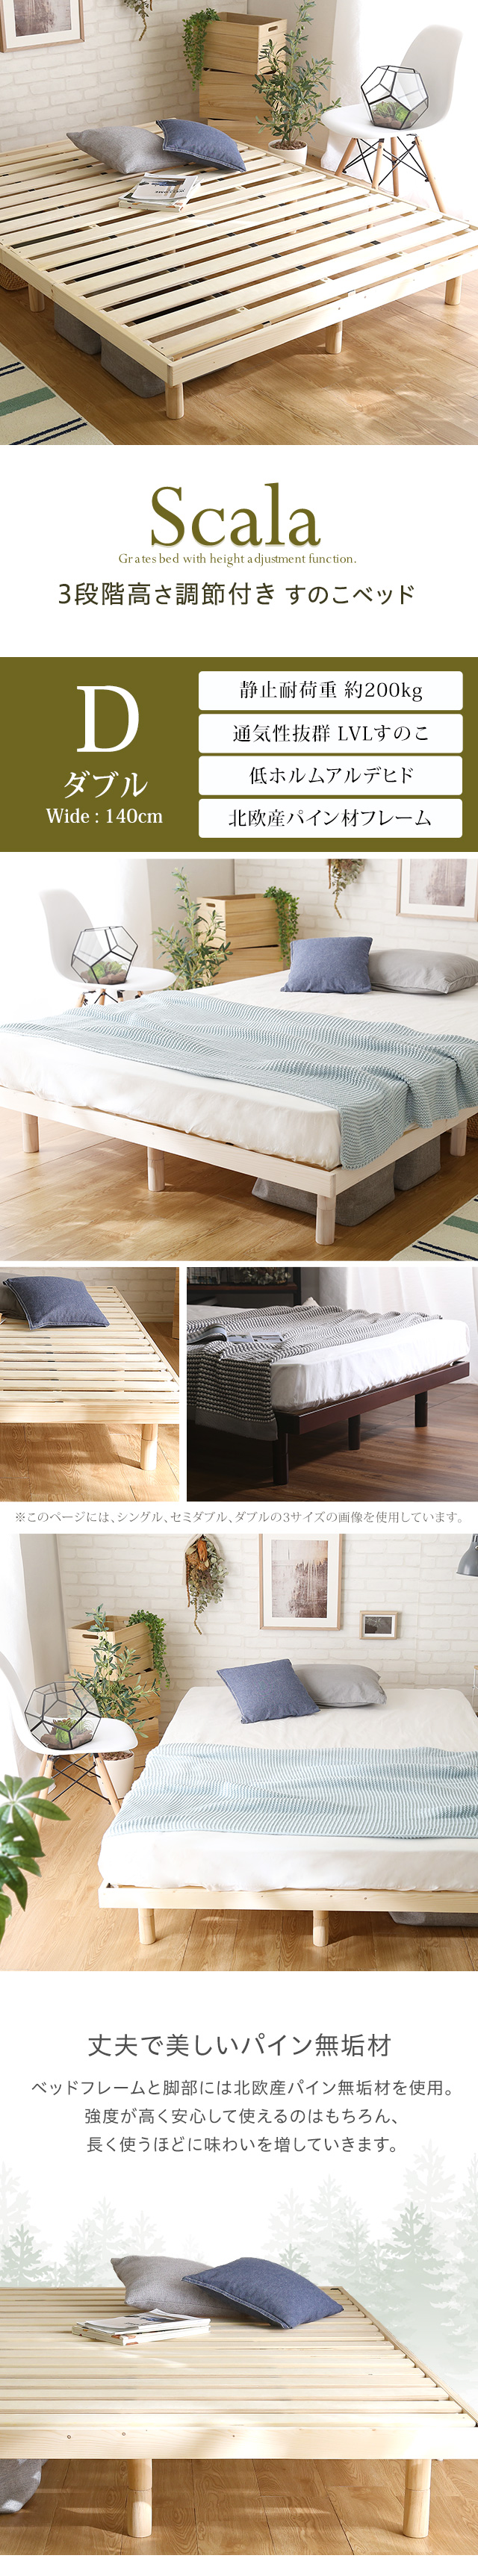 天然桐無垢材 スノコ ベッド マット ロール式 シングルサイズ